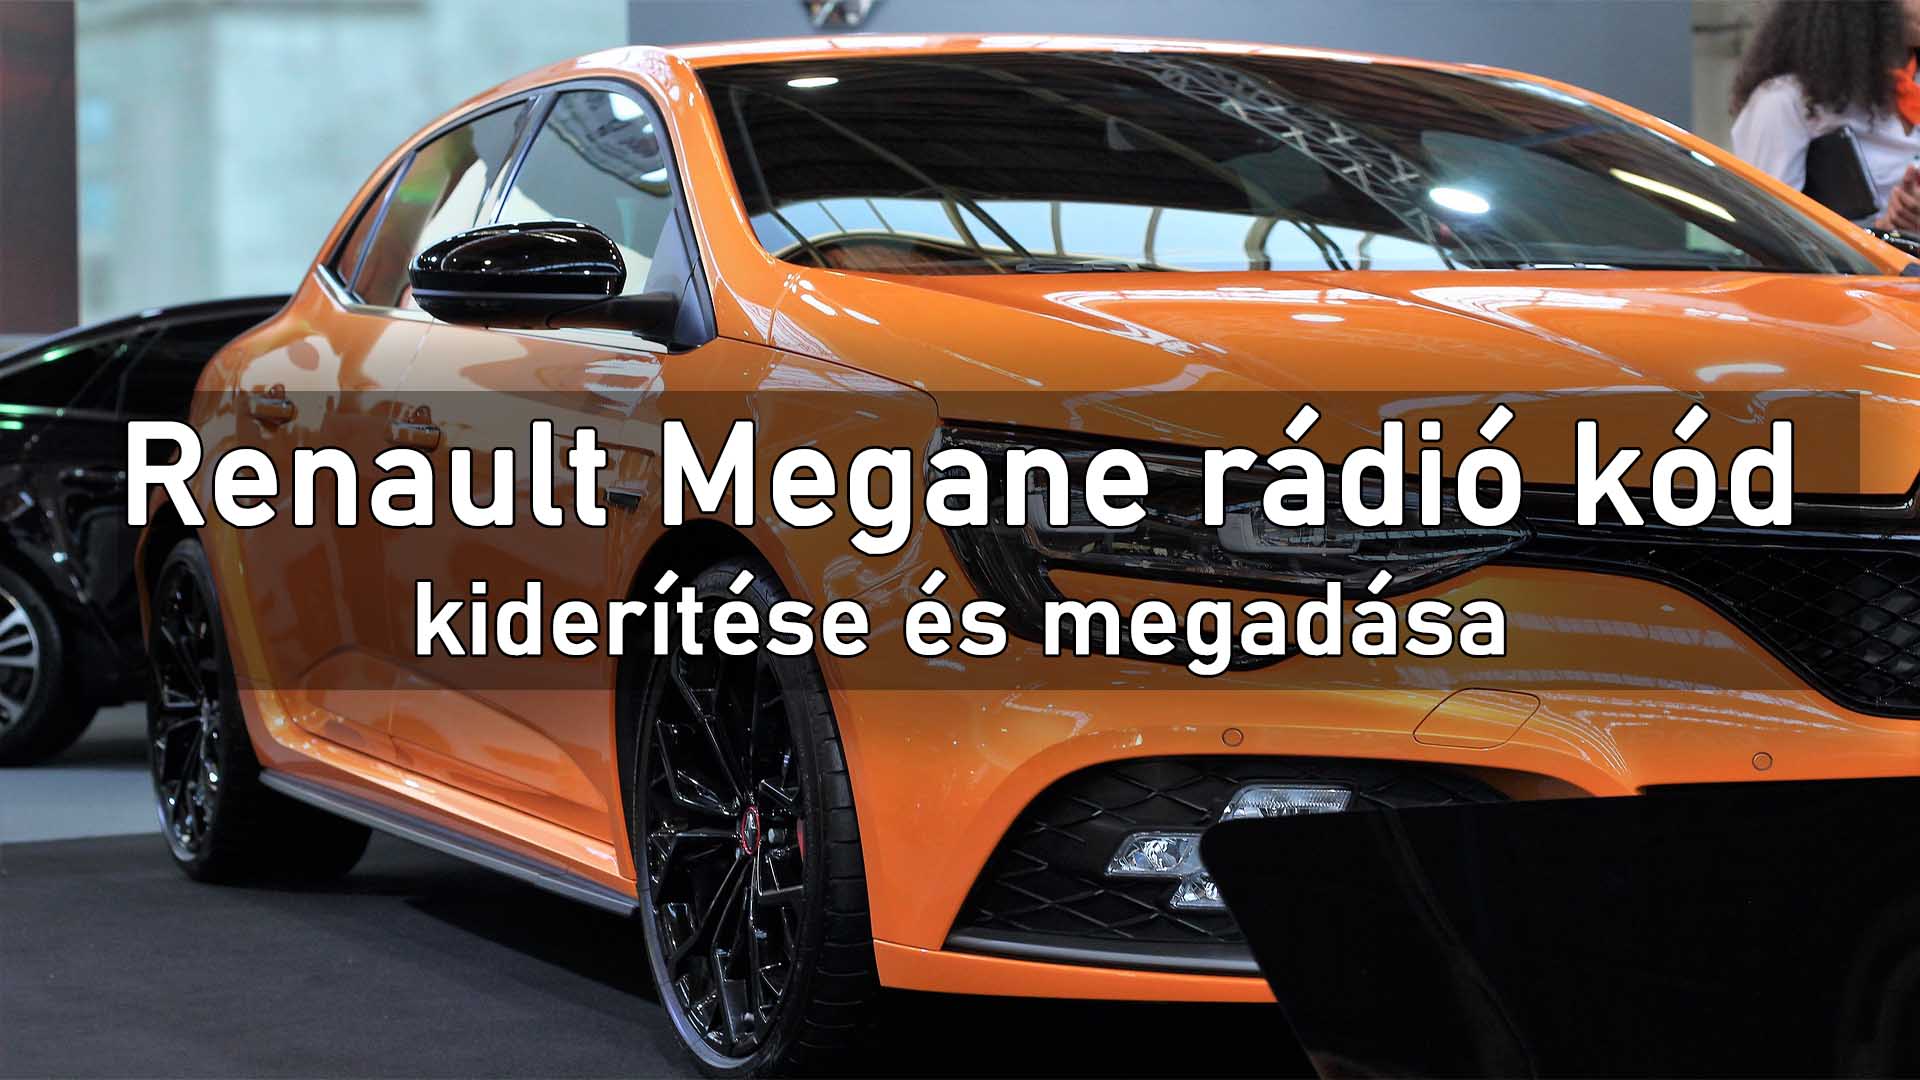 Renault Megane rádió kód kiderítése és megadása